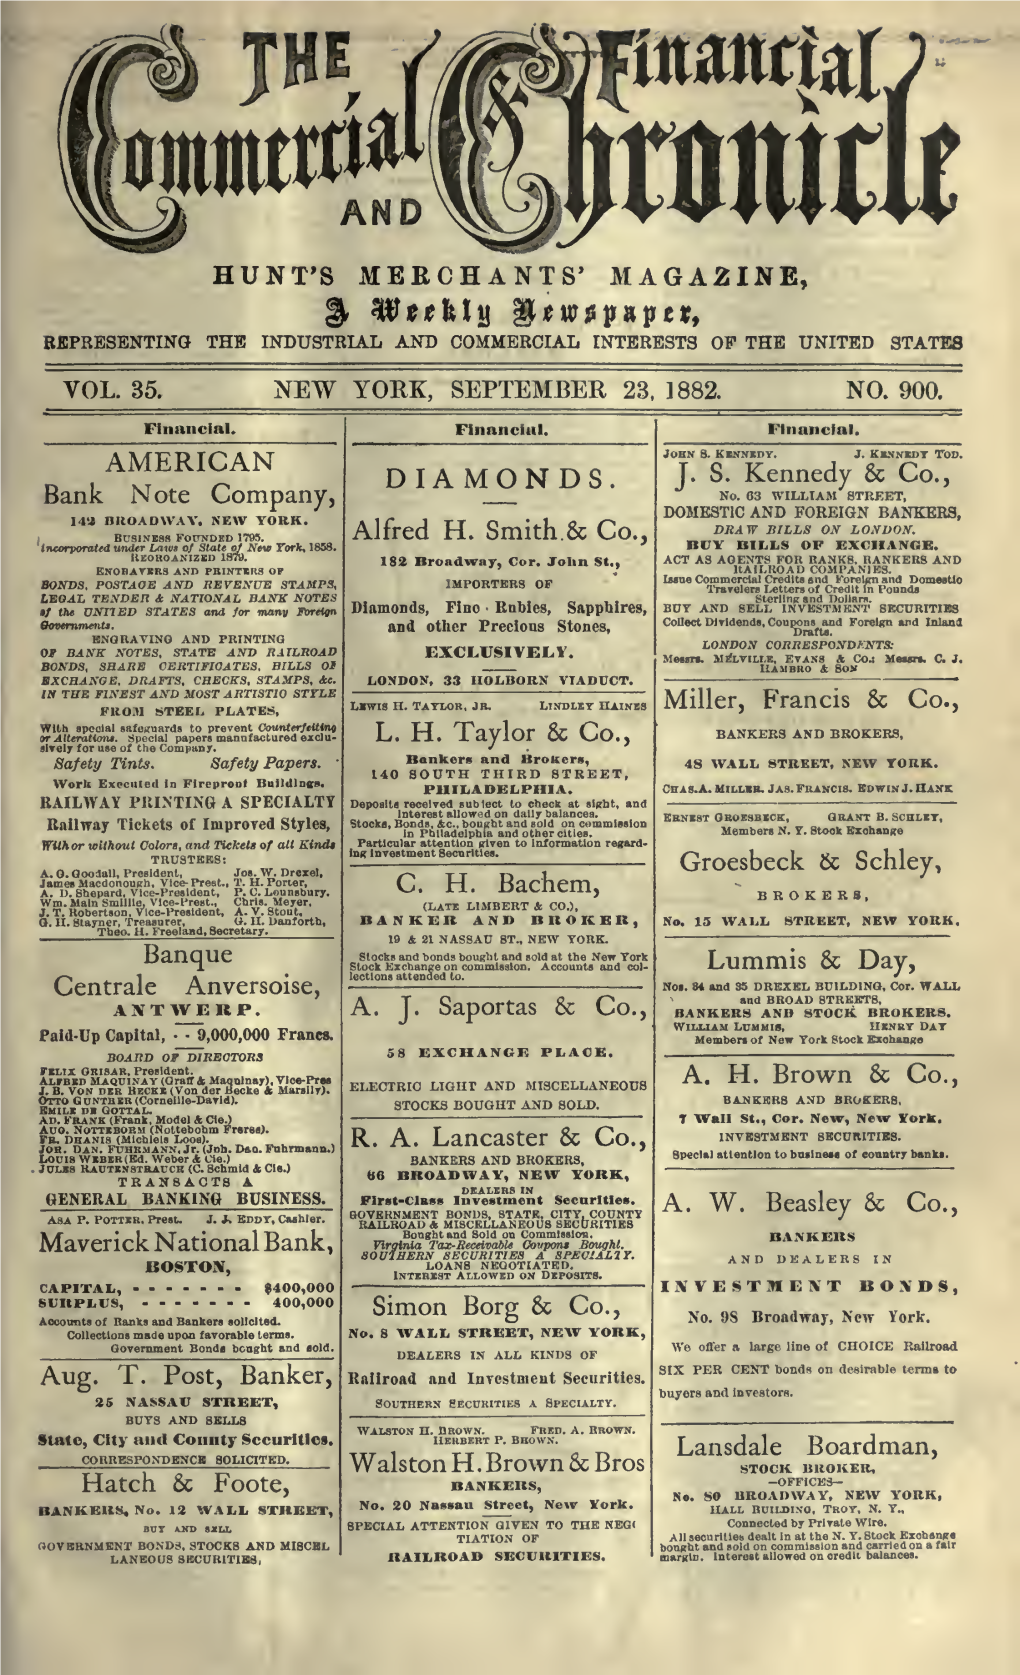 September 23, 1882, Vol. 35, No